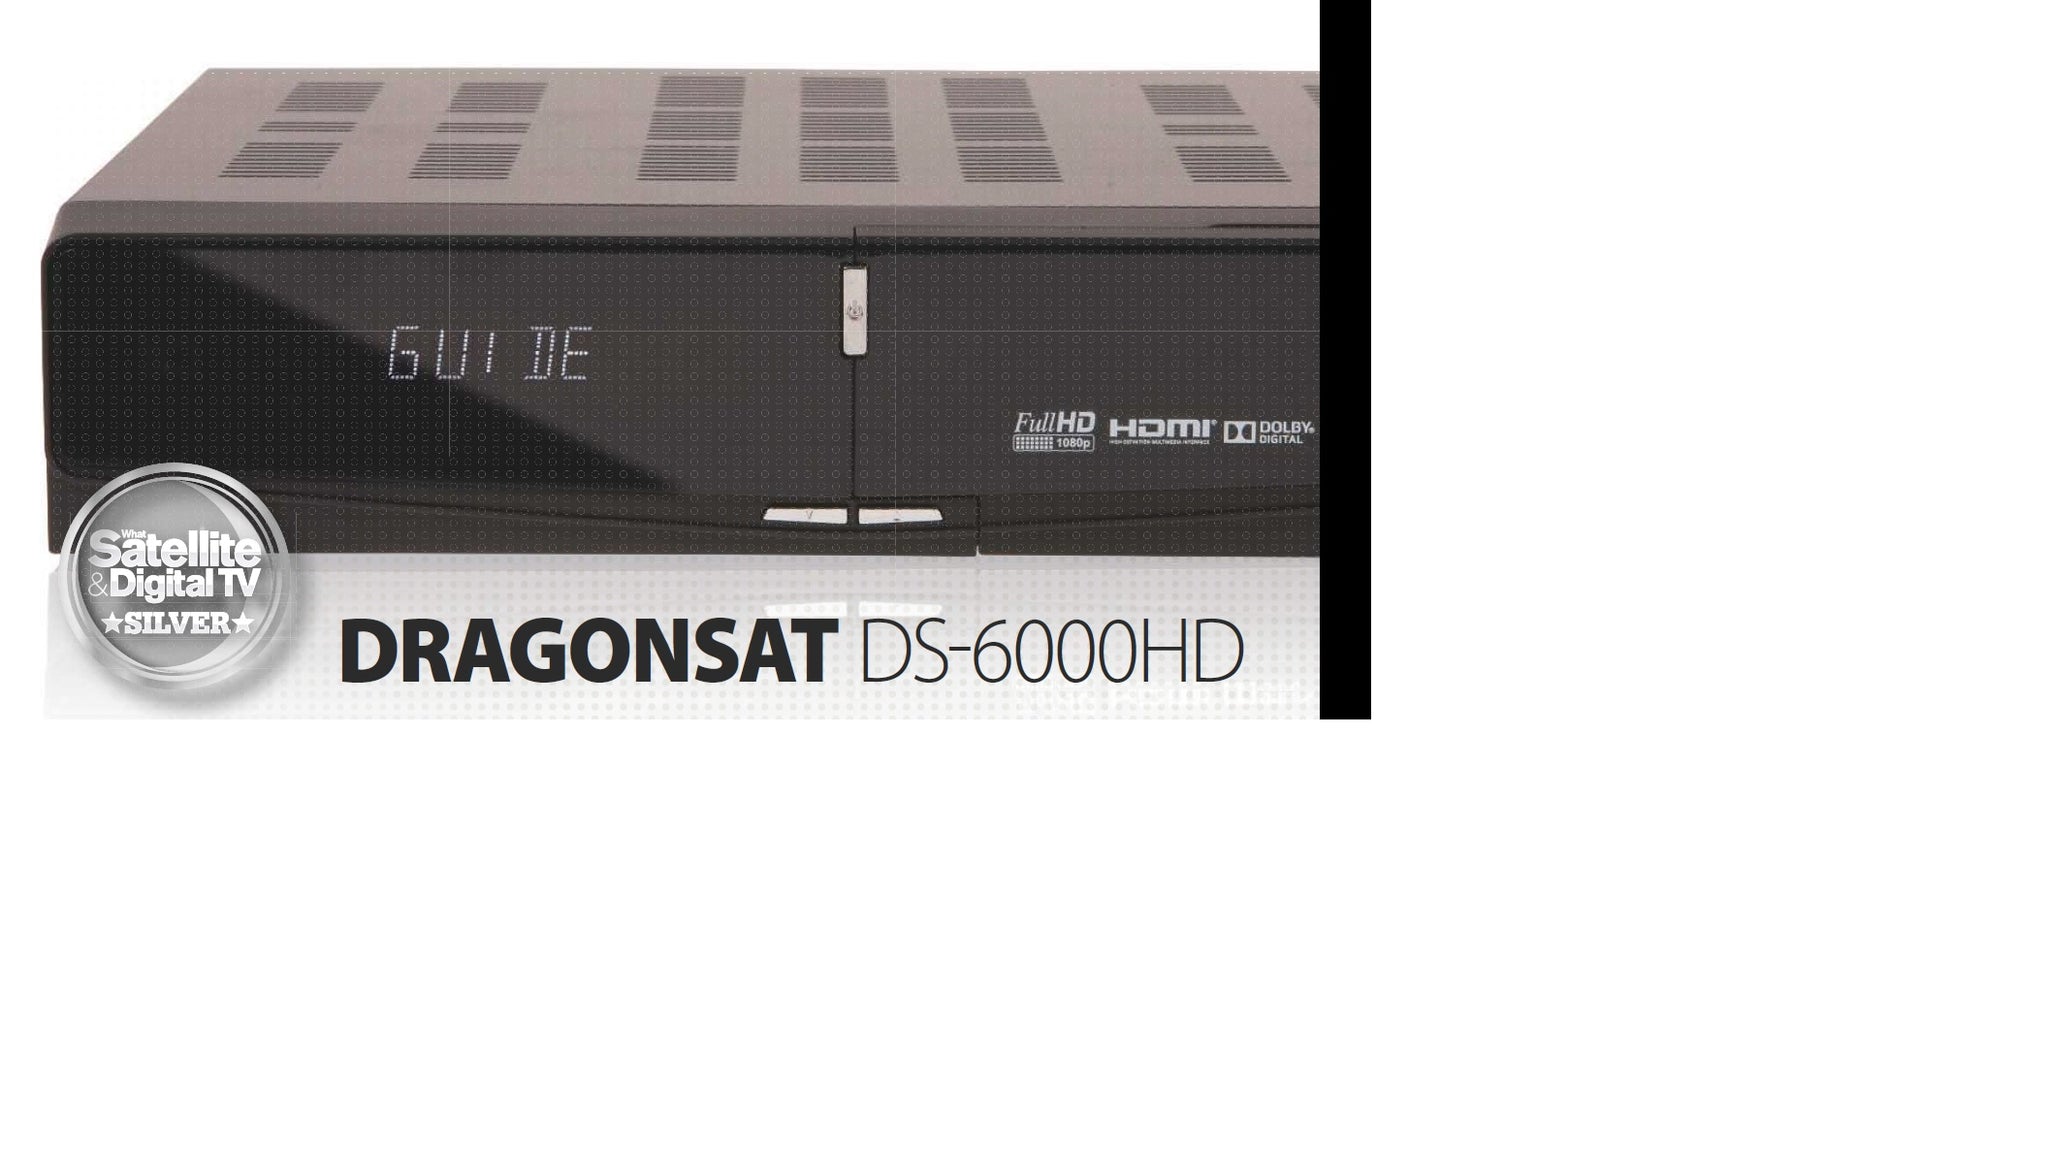 Dragonsat DS-6000HD Free to Air Full HD 1080p DVB-S2 Satellite Receiver LAN USB